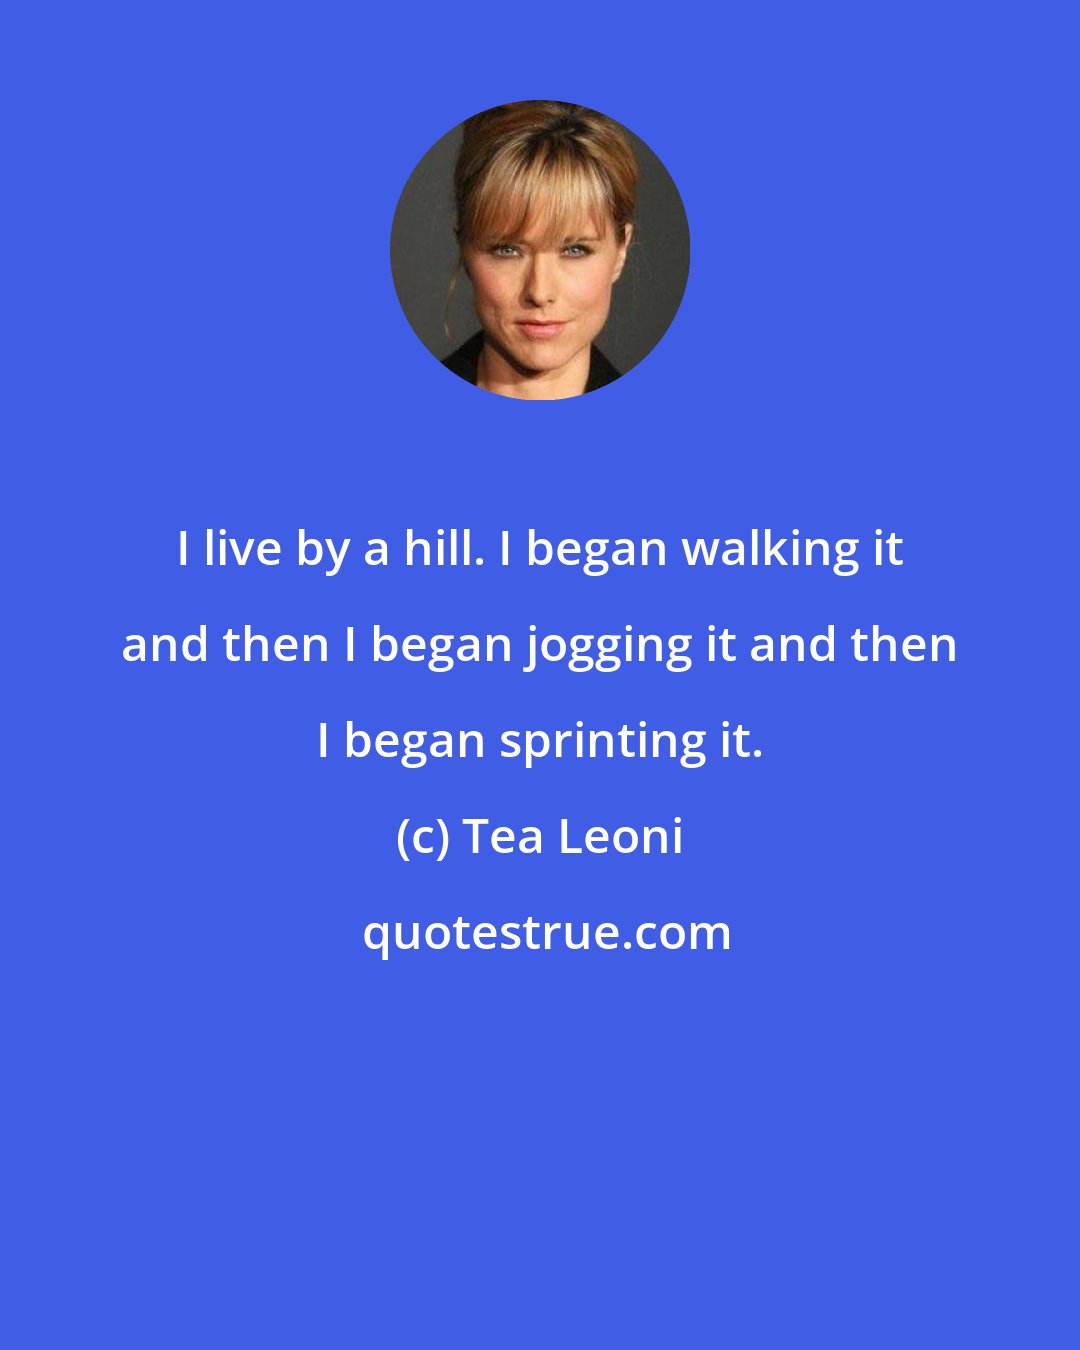 Tea Leoni: I live by a hill. I began walking it and then I began jogging it and then I began sprinting it.